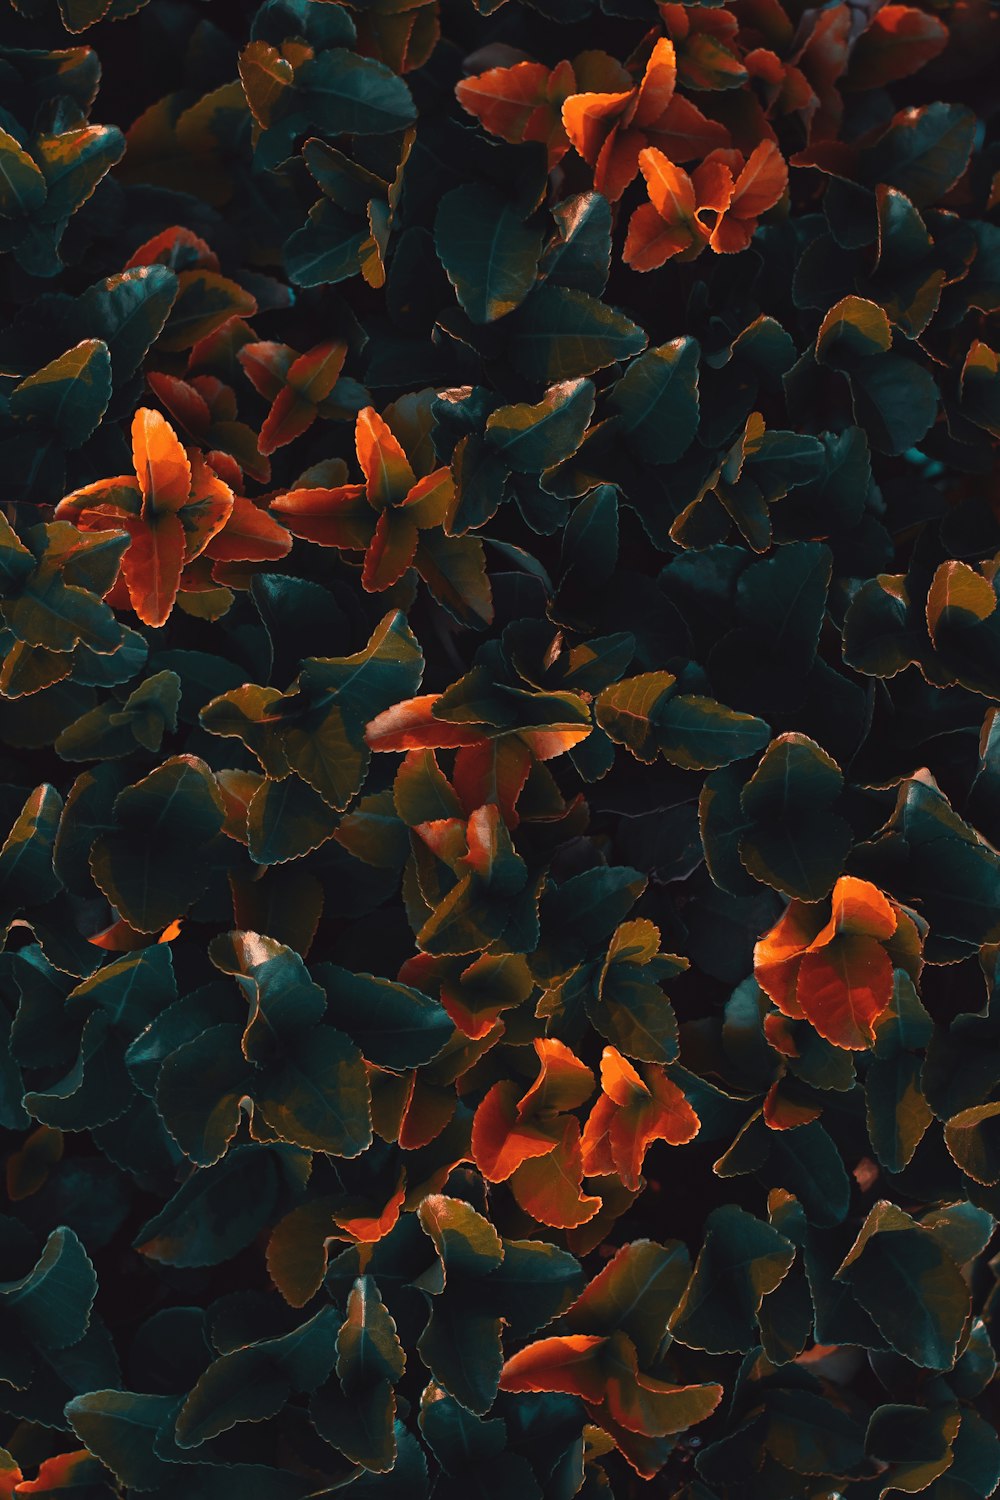 빨간색과 파란색 꽃잎이 있는 꽃의 근접 촬영